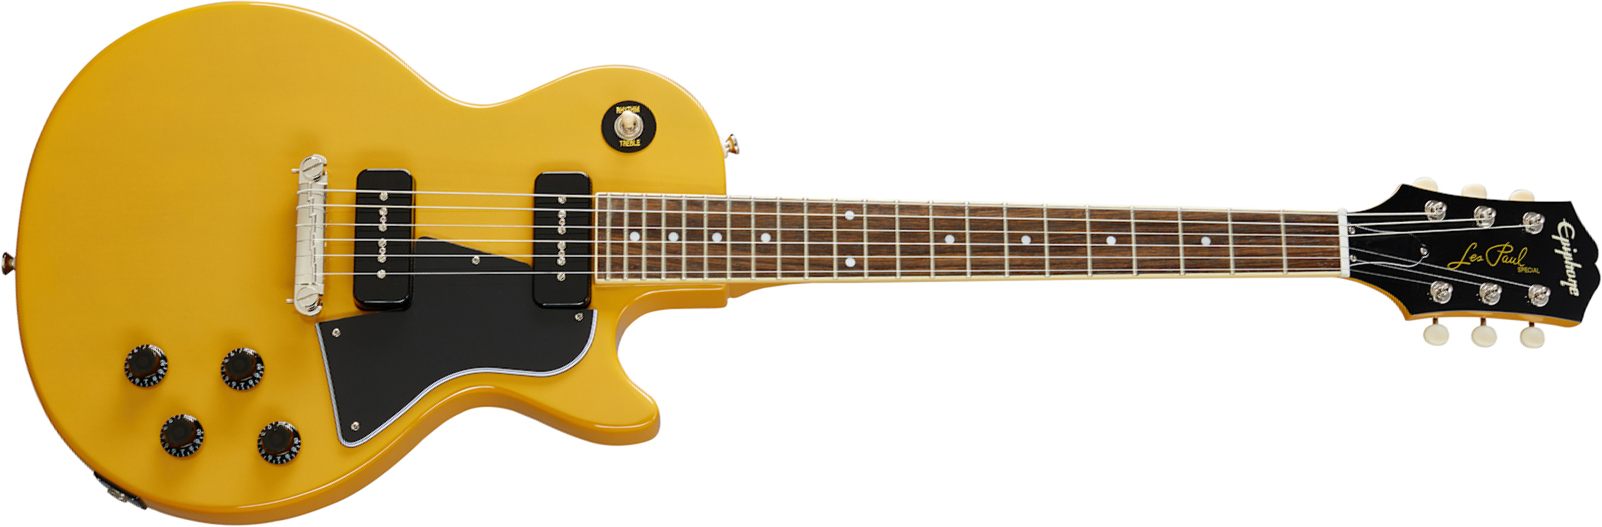 Epiphone Les Paul Special 2p90 Ht Lau - Tv Yellow - Single-Cut-E-Gitarre - Main picture